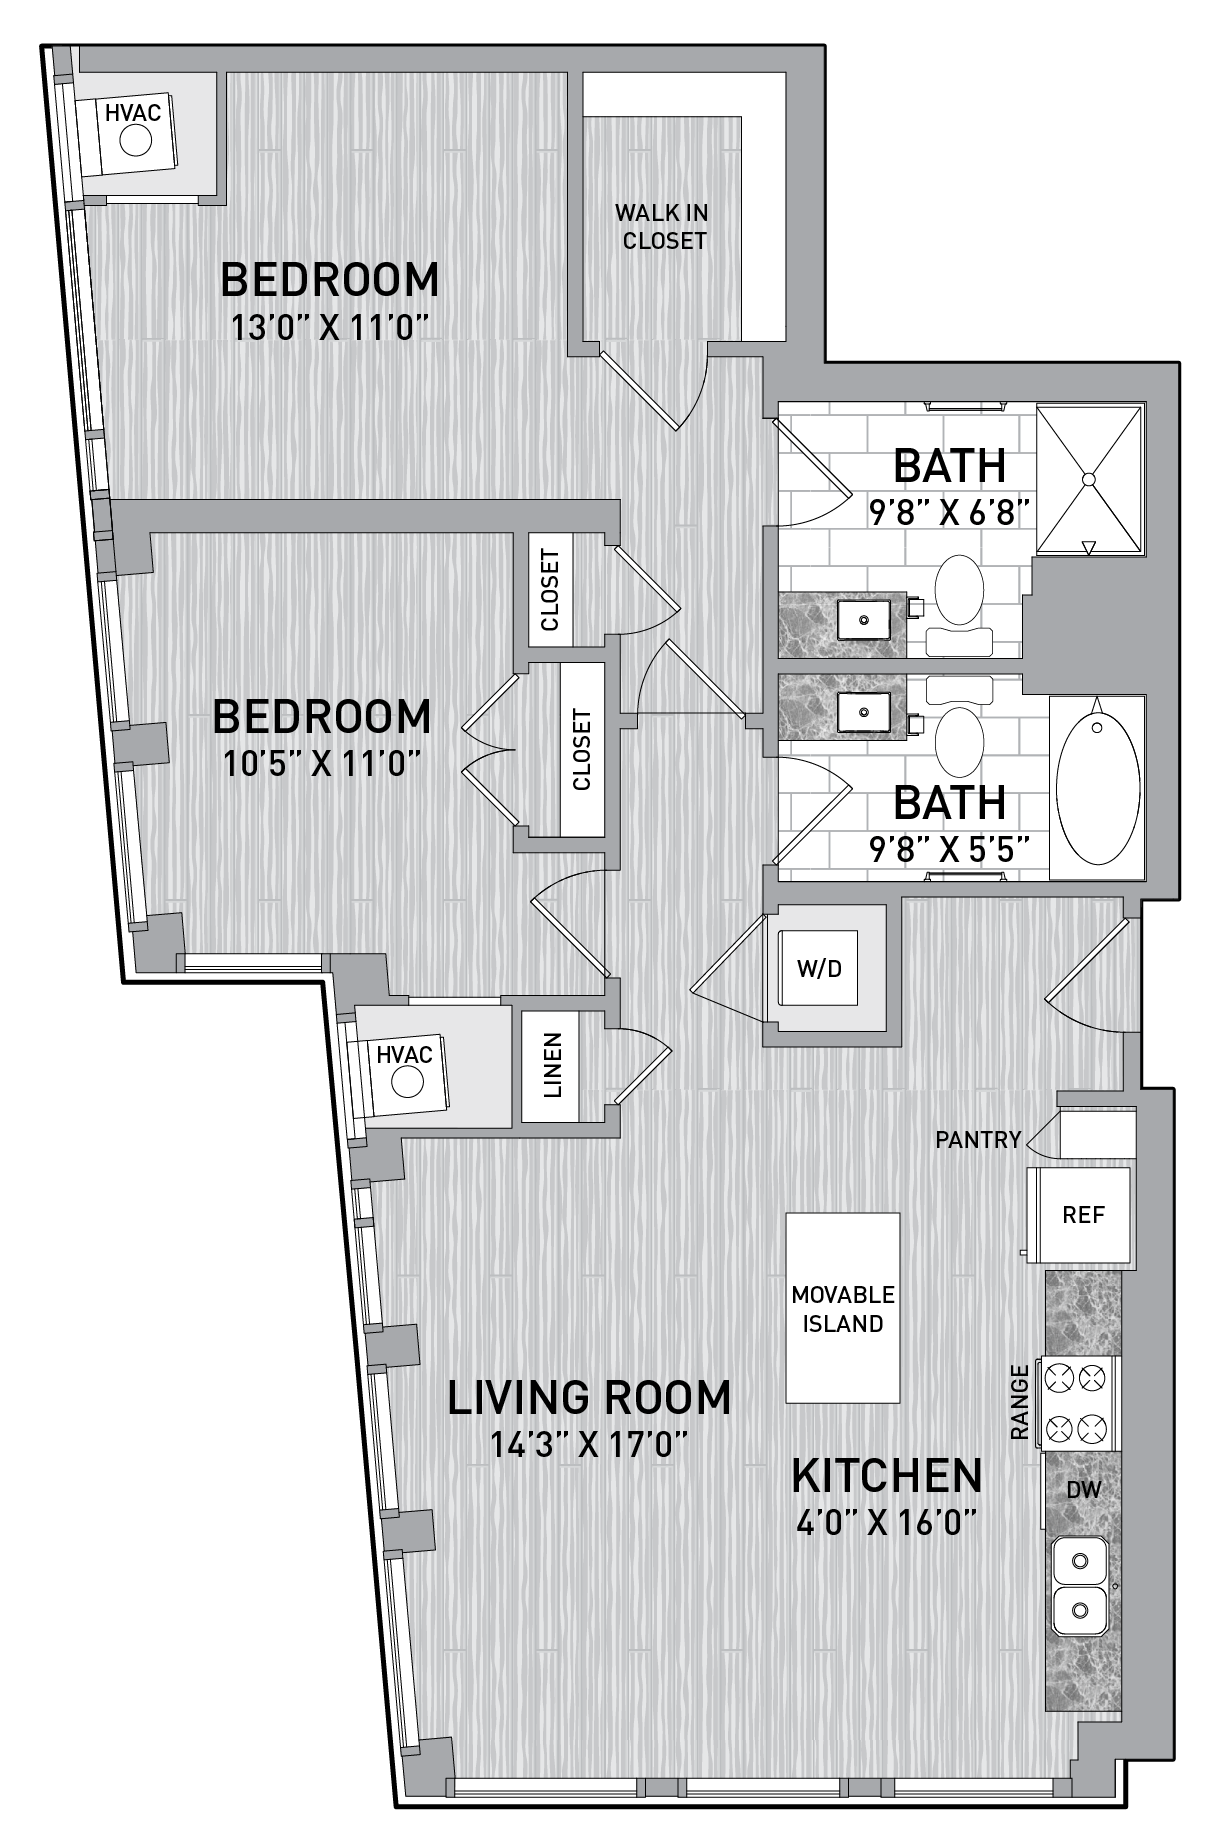 floorplan image of unit id 0602